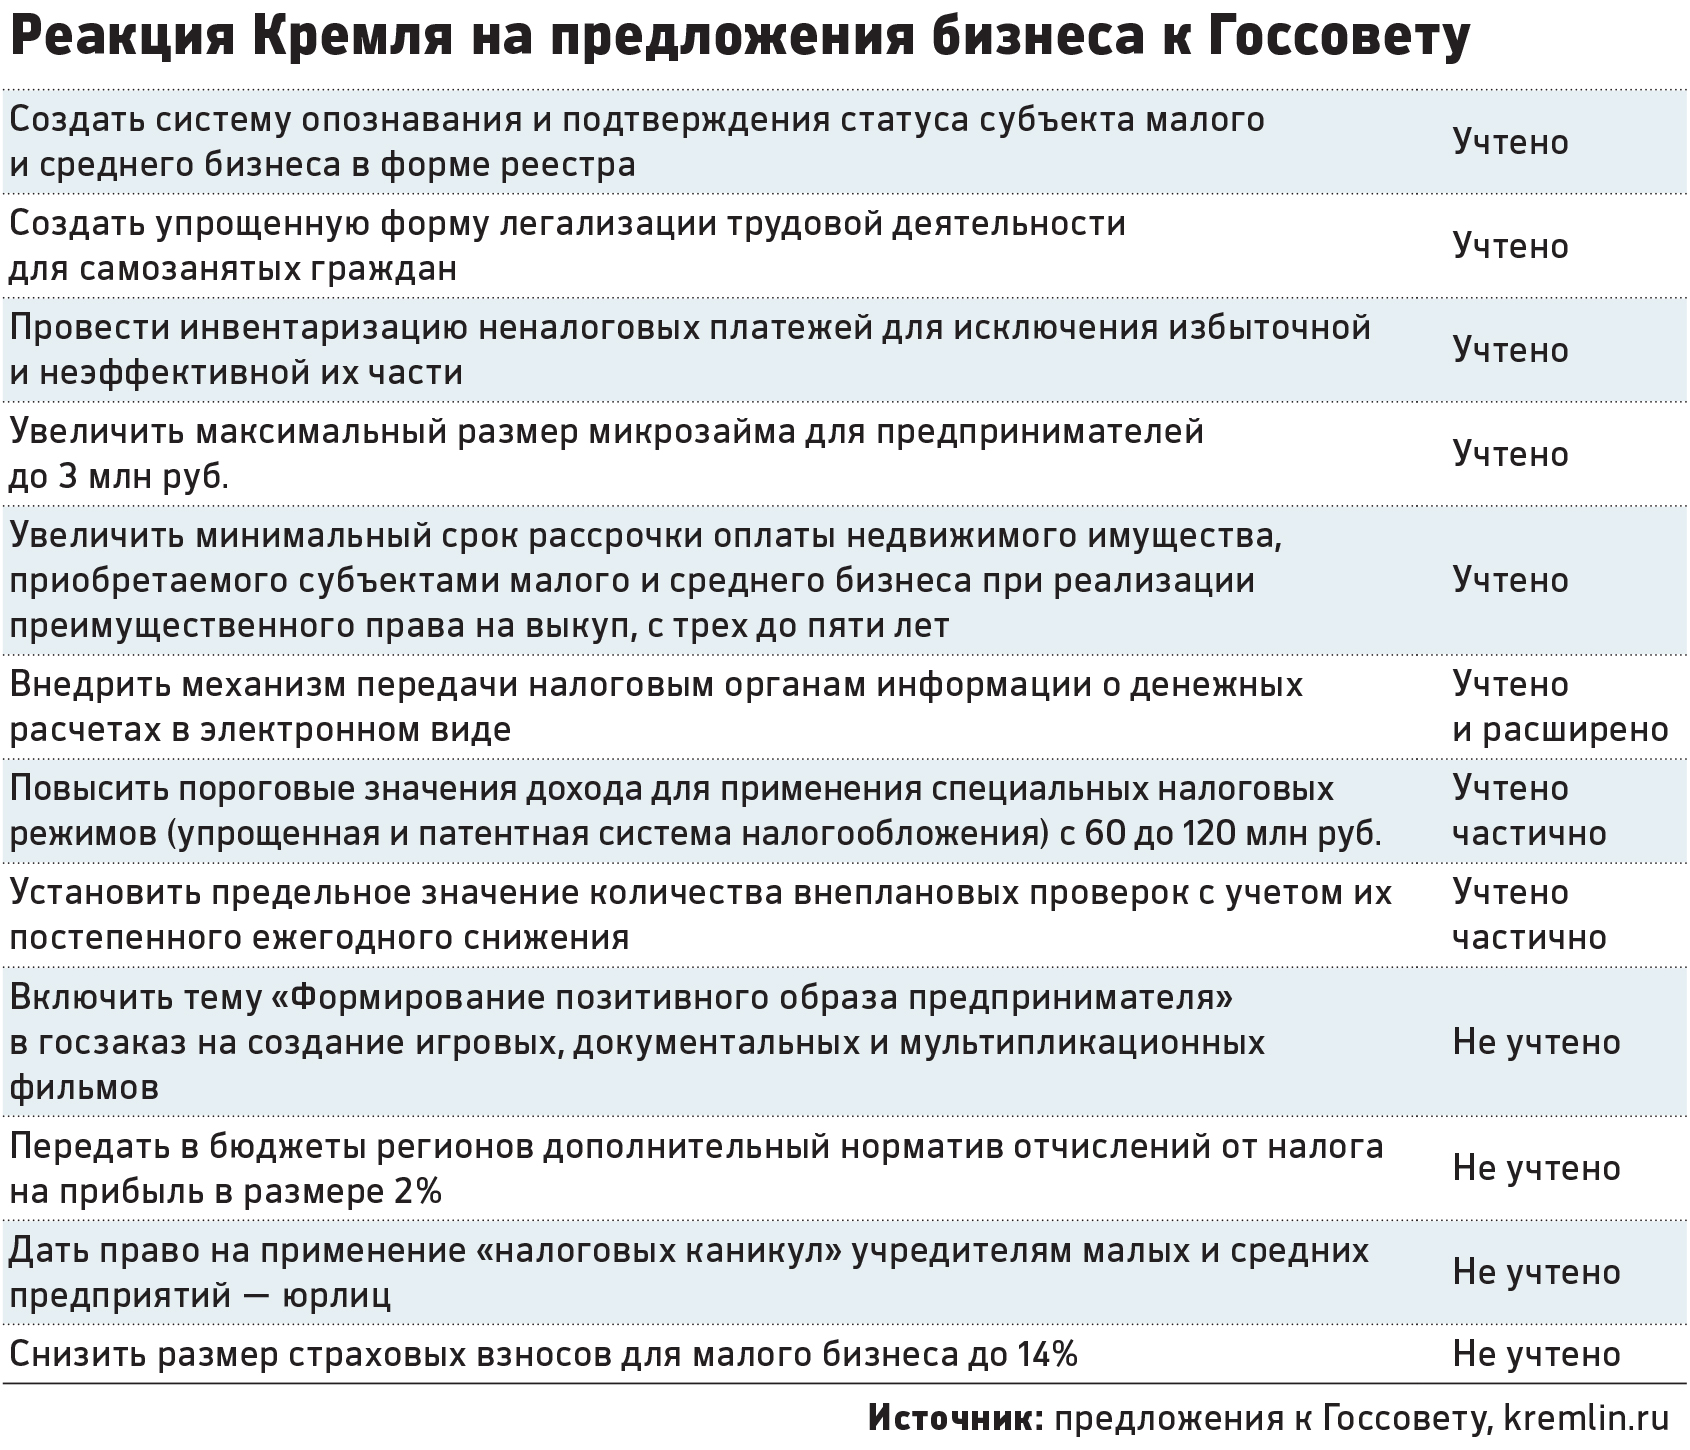 Реферат: Система неналоговых платежей в Украине